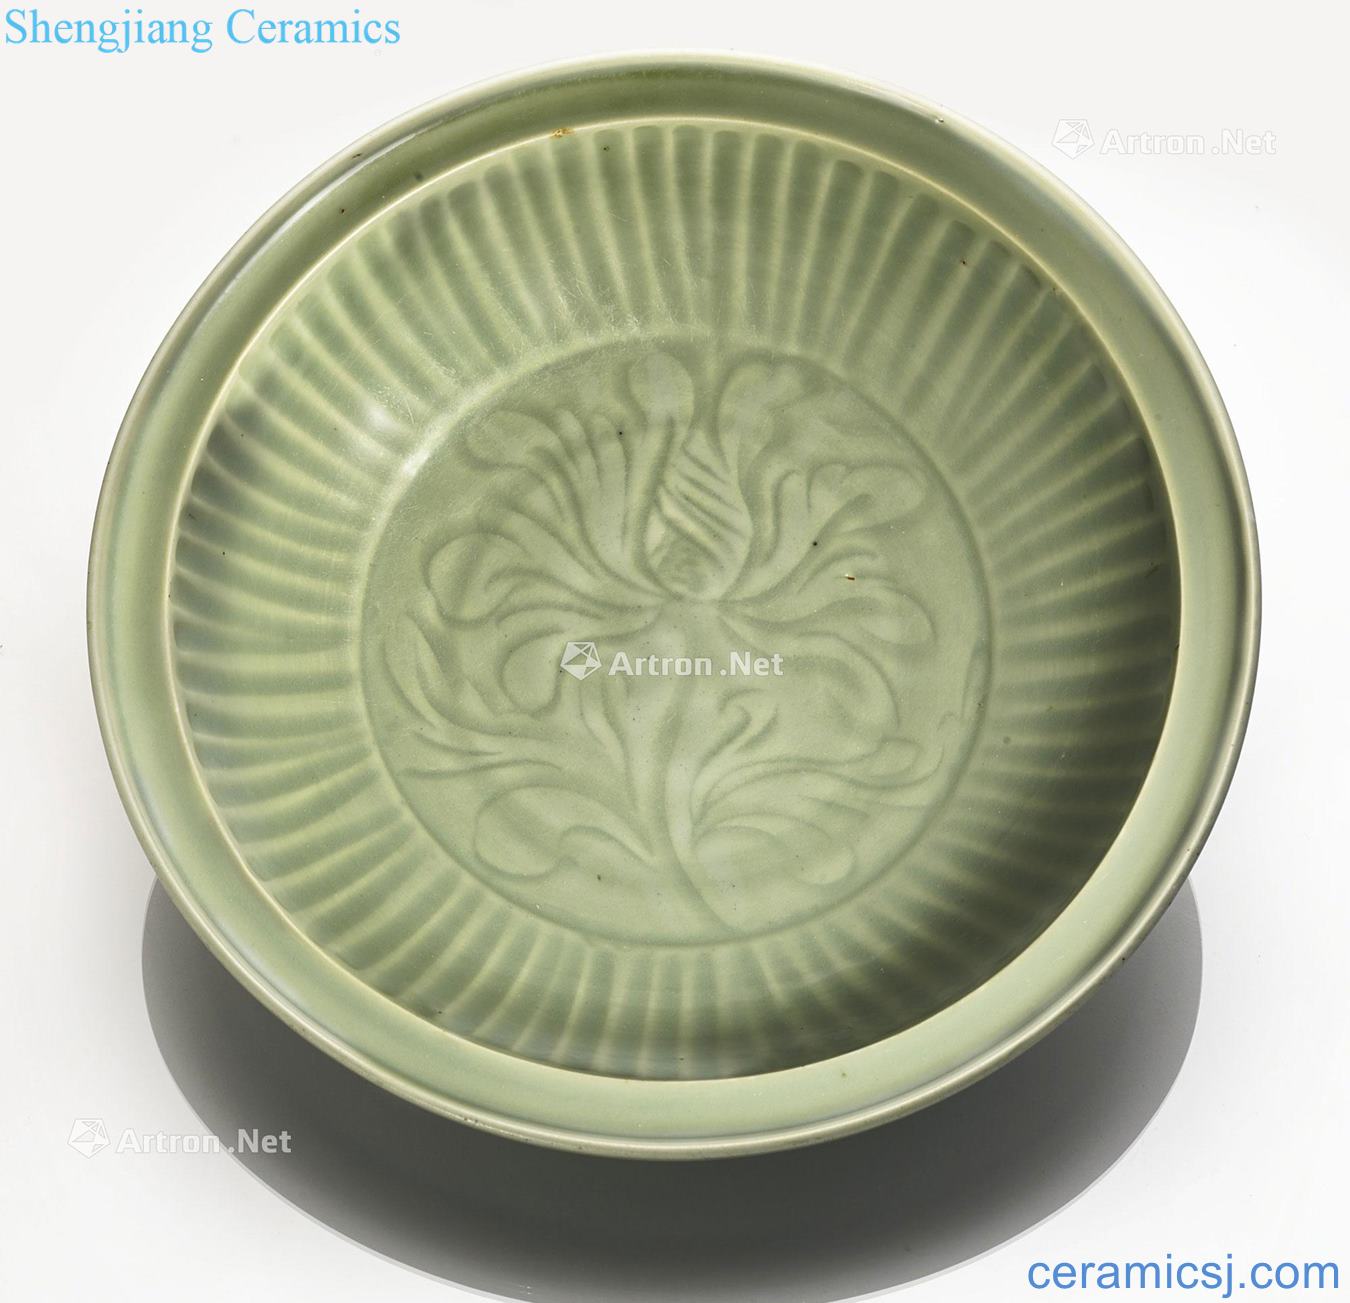 Yuan/Ming Longquan celadon glaze lotus pattern plate